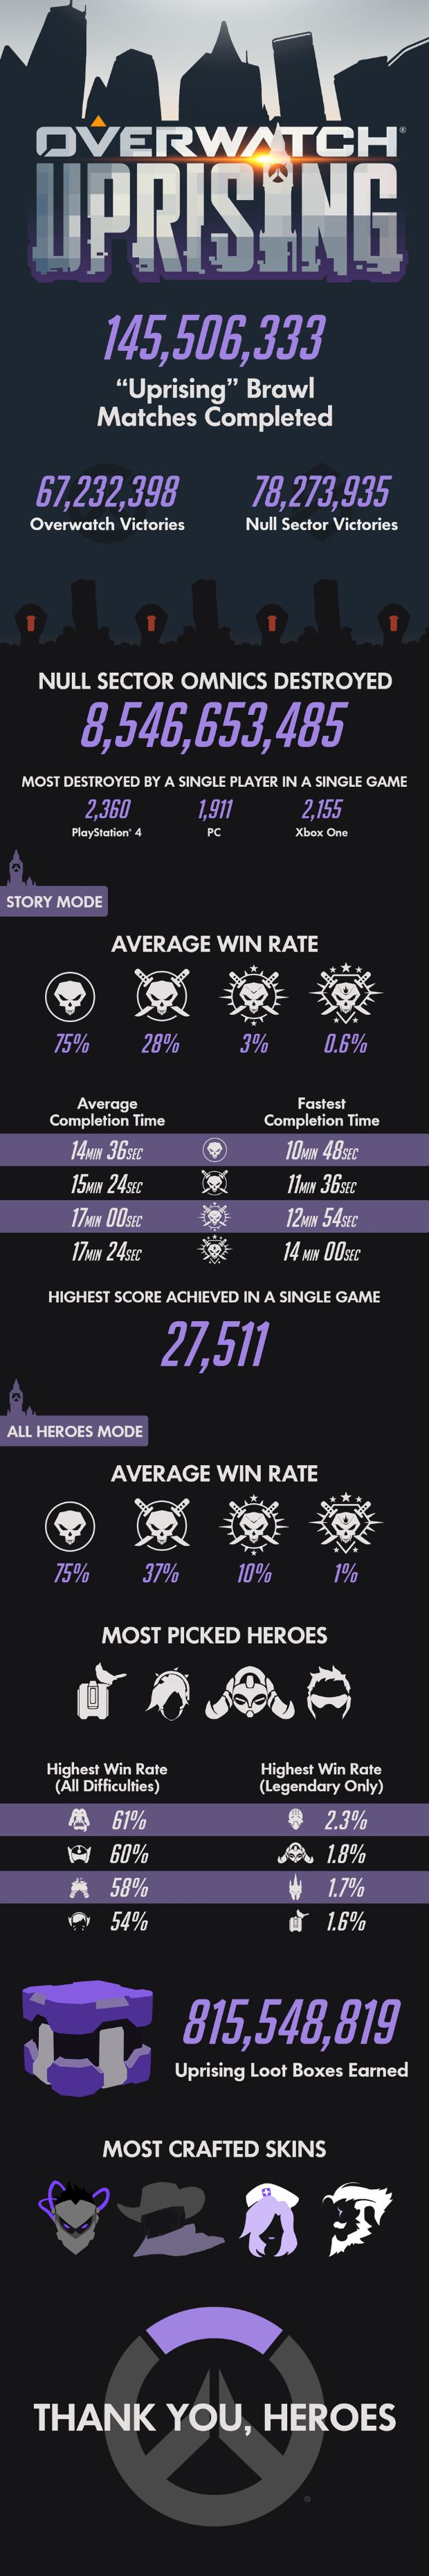 Overwatch'ın Uprising istatistikleri açıklandı